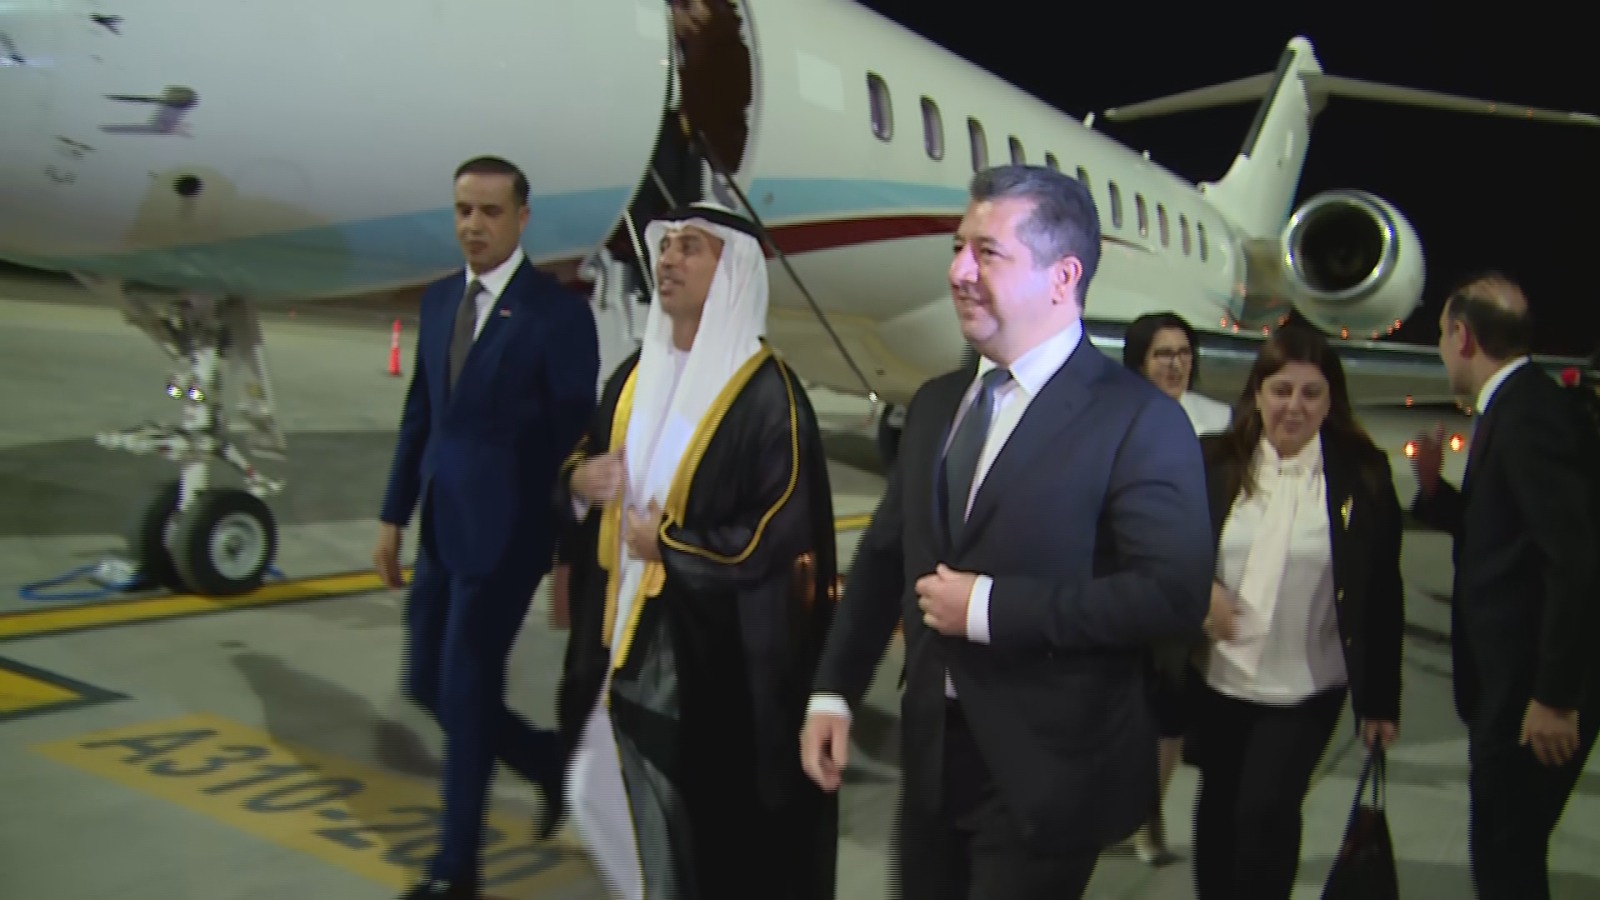 مشهد للحظة وصول رئيس حكومة إقليم كوردستان إلى الإمارات للمشاركة في قمة كوب28